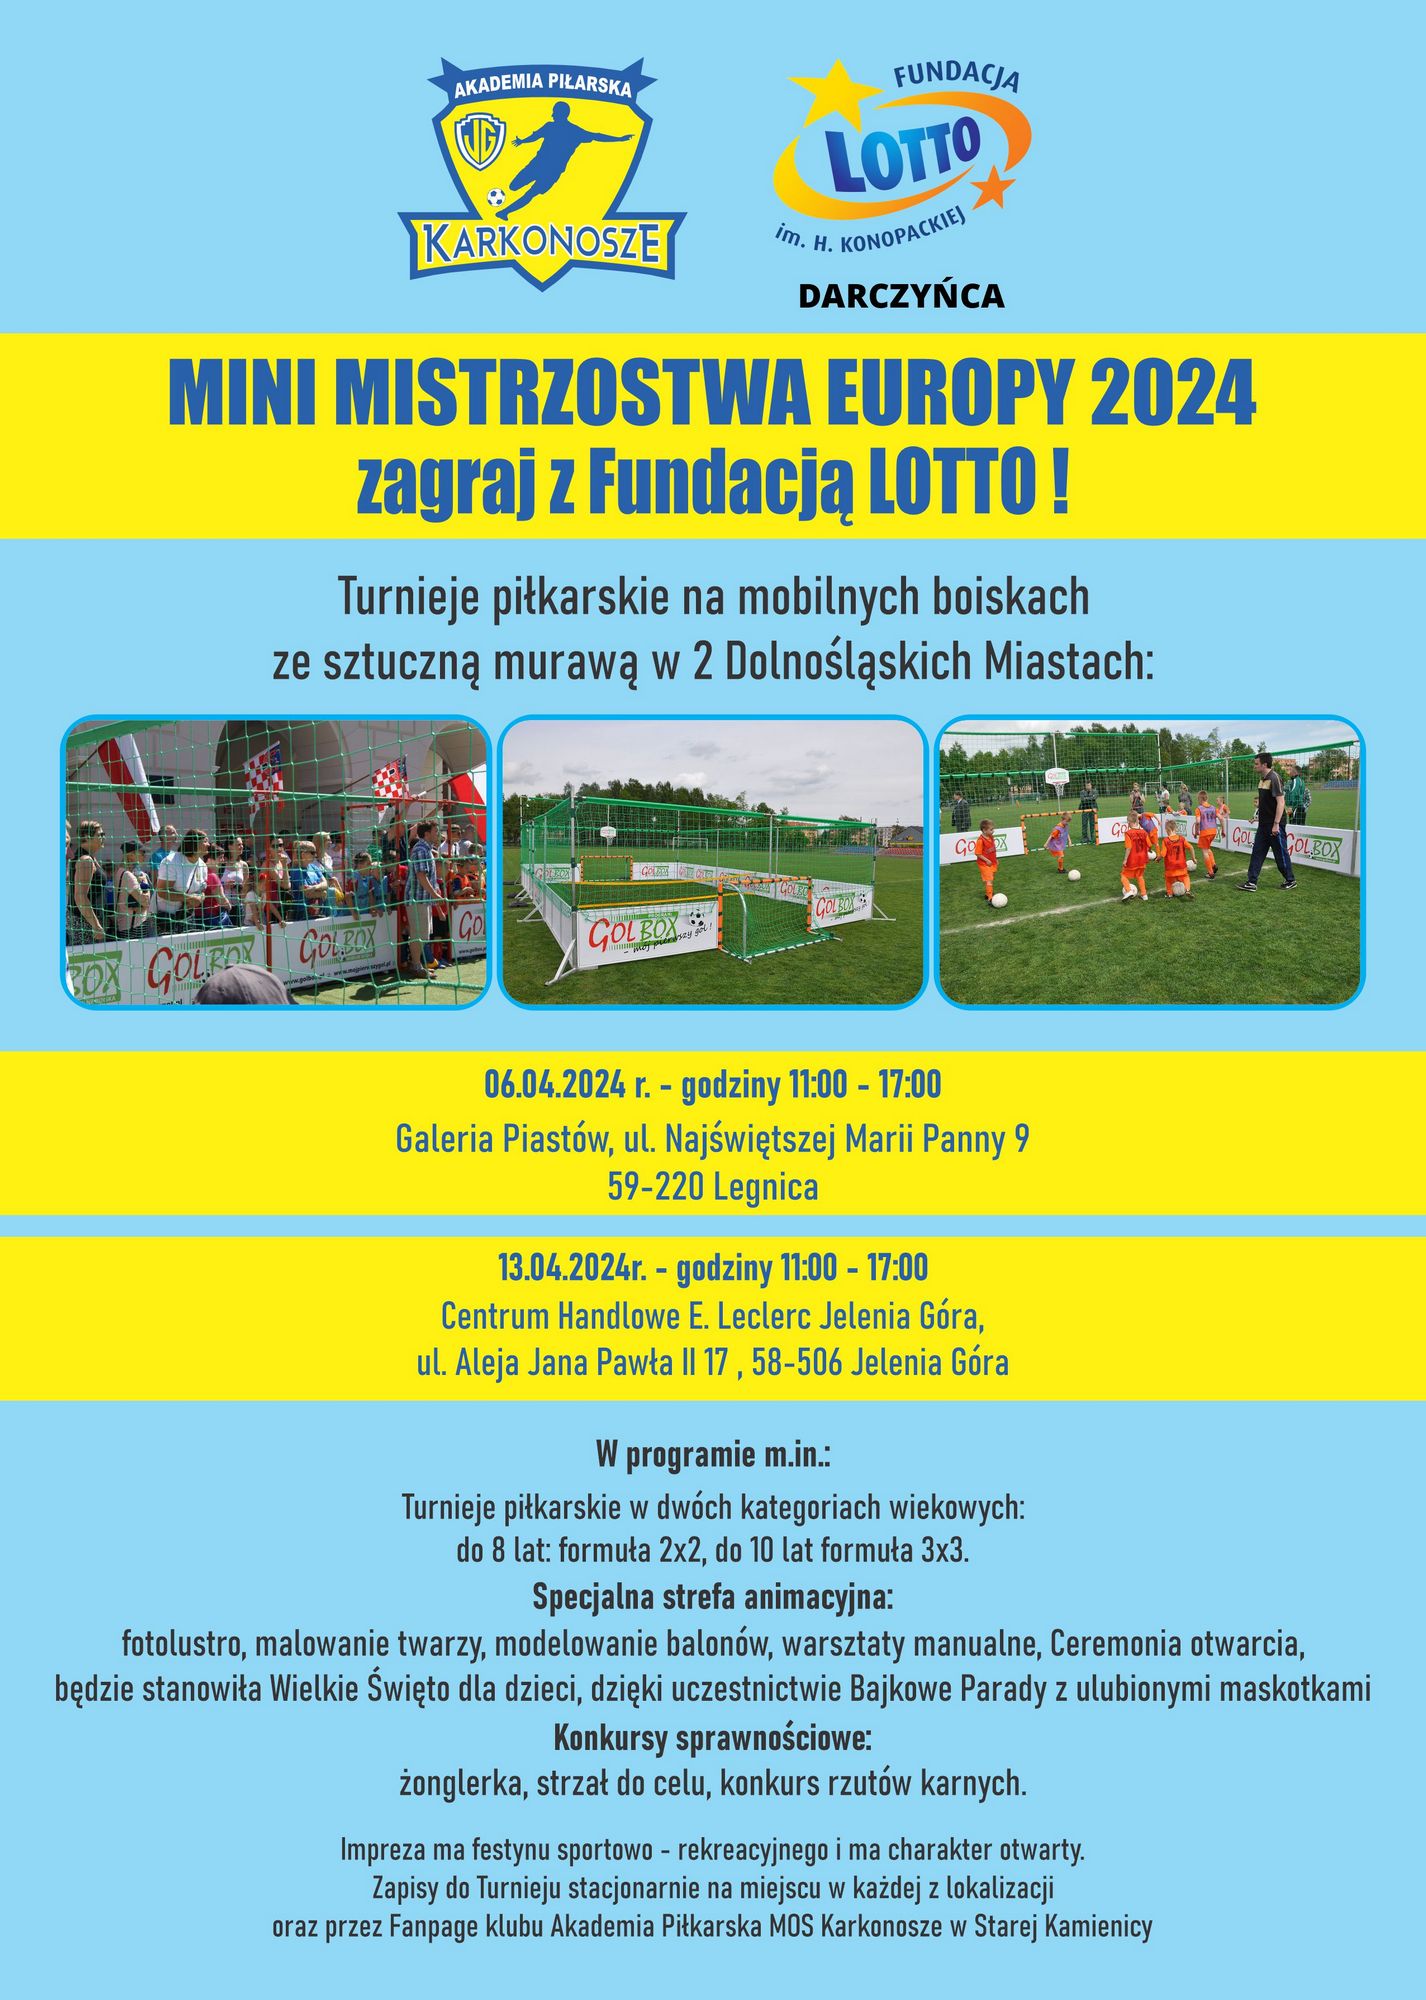 Mini Mistrzostwa Europy 2024 -zagraj z Fundacją Lotto! 